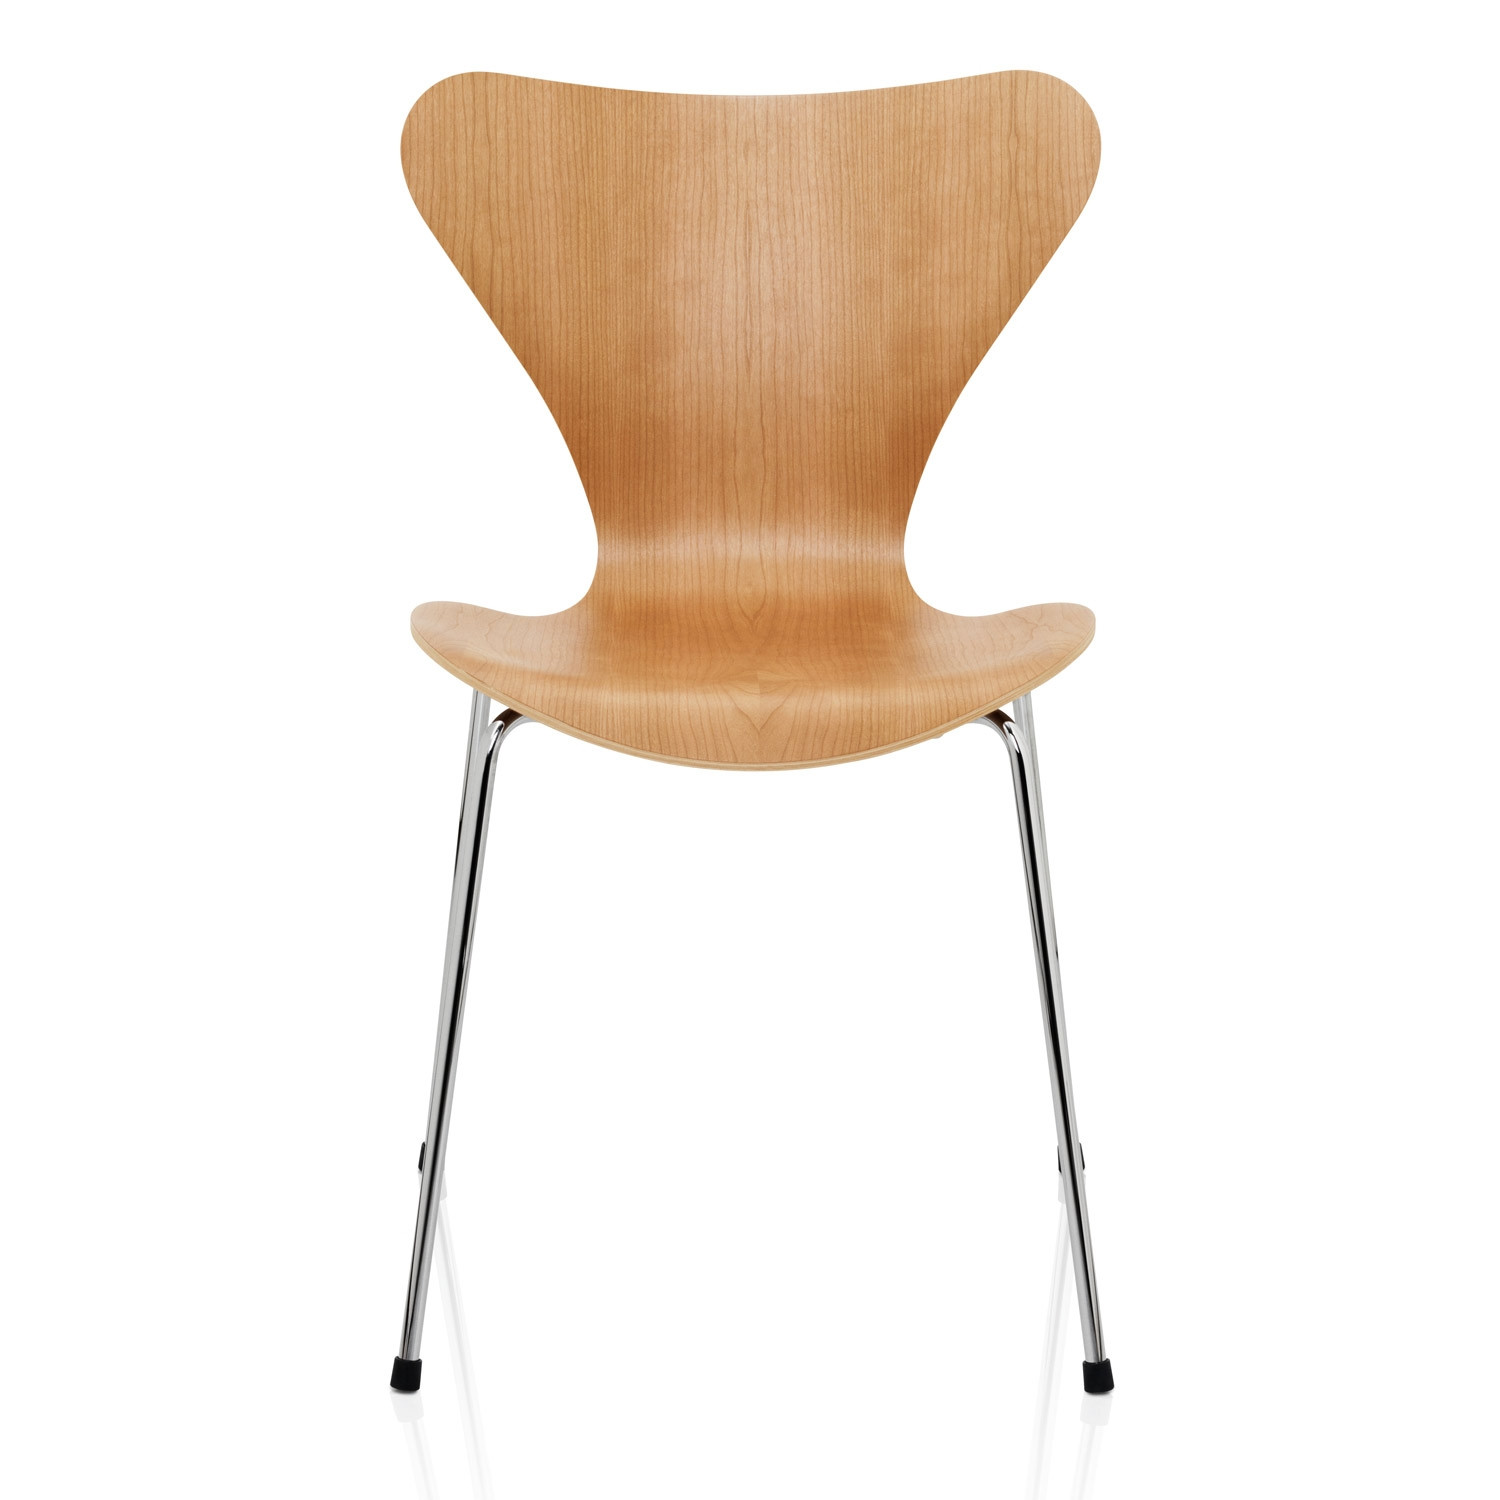 Series7 Chair in Veneer